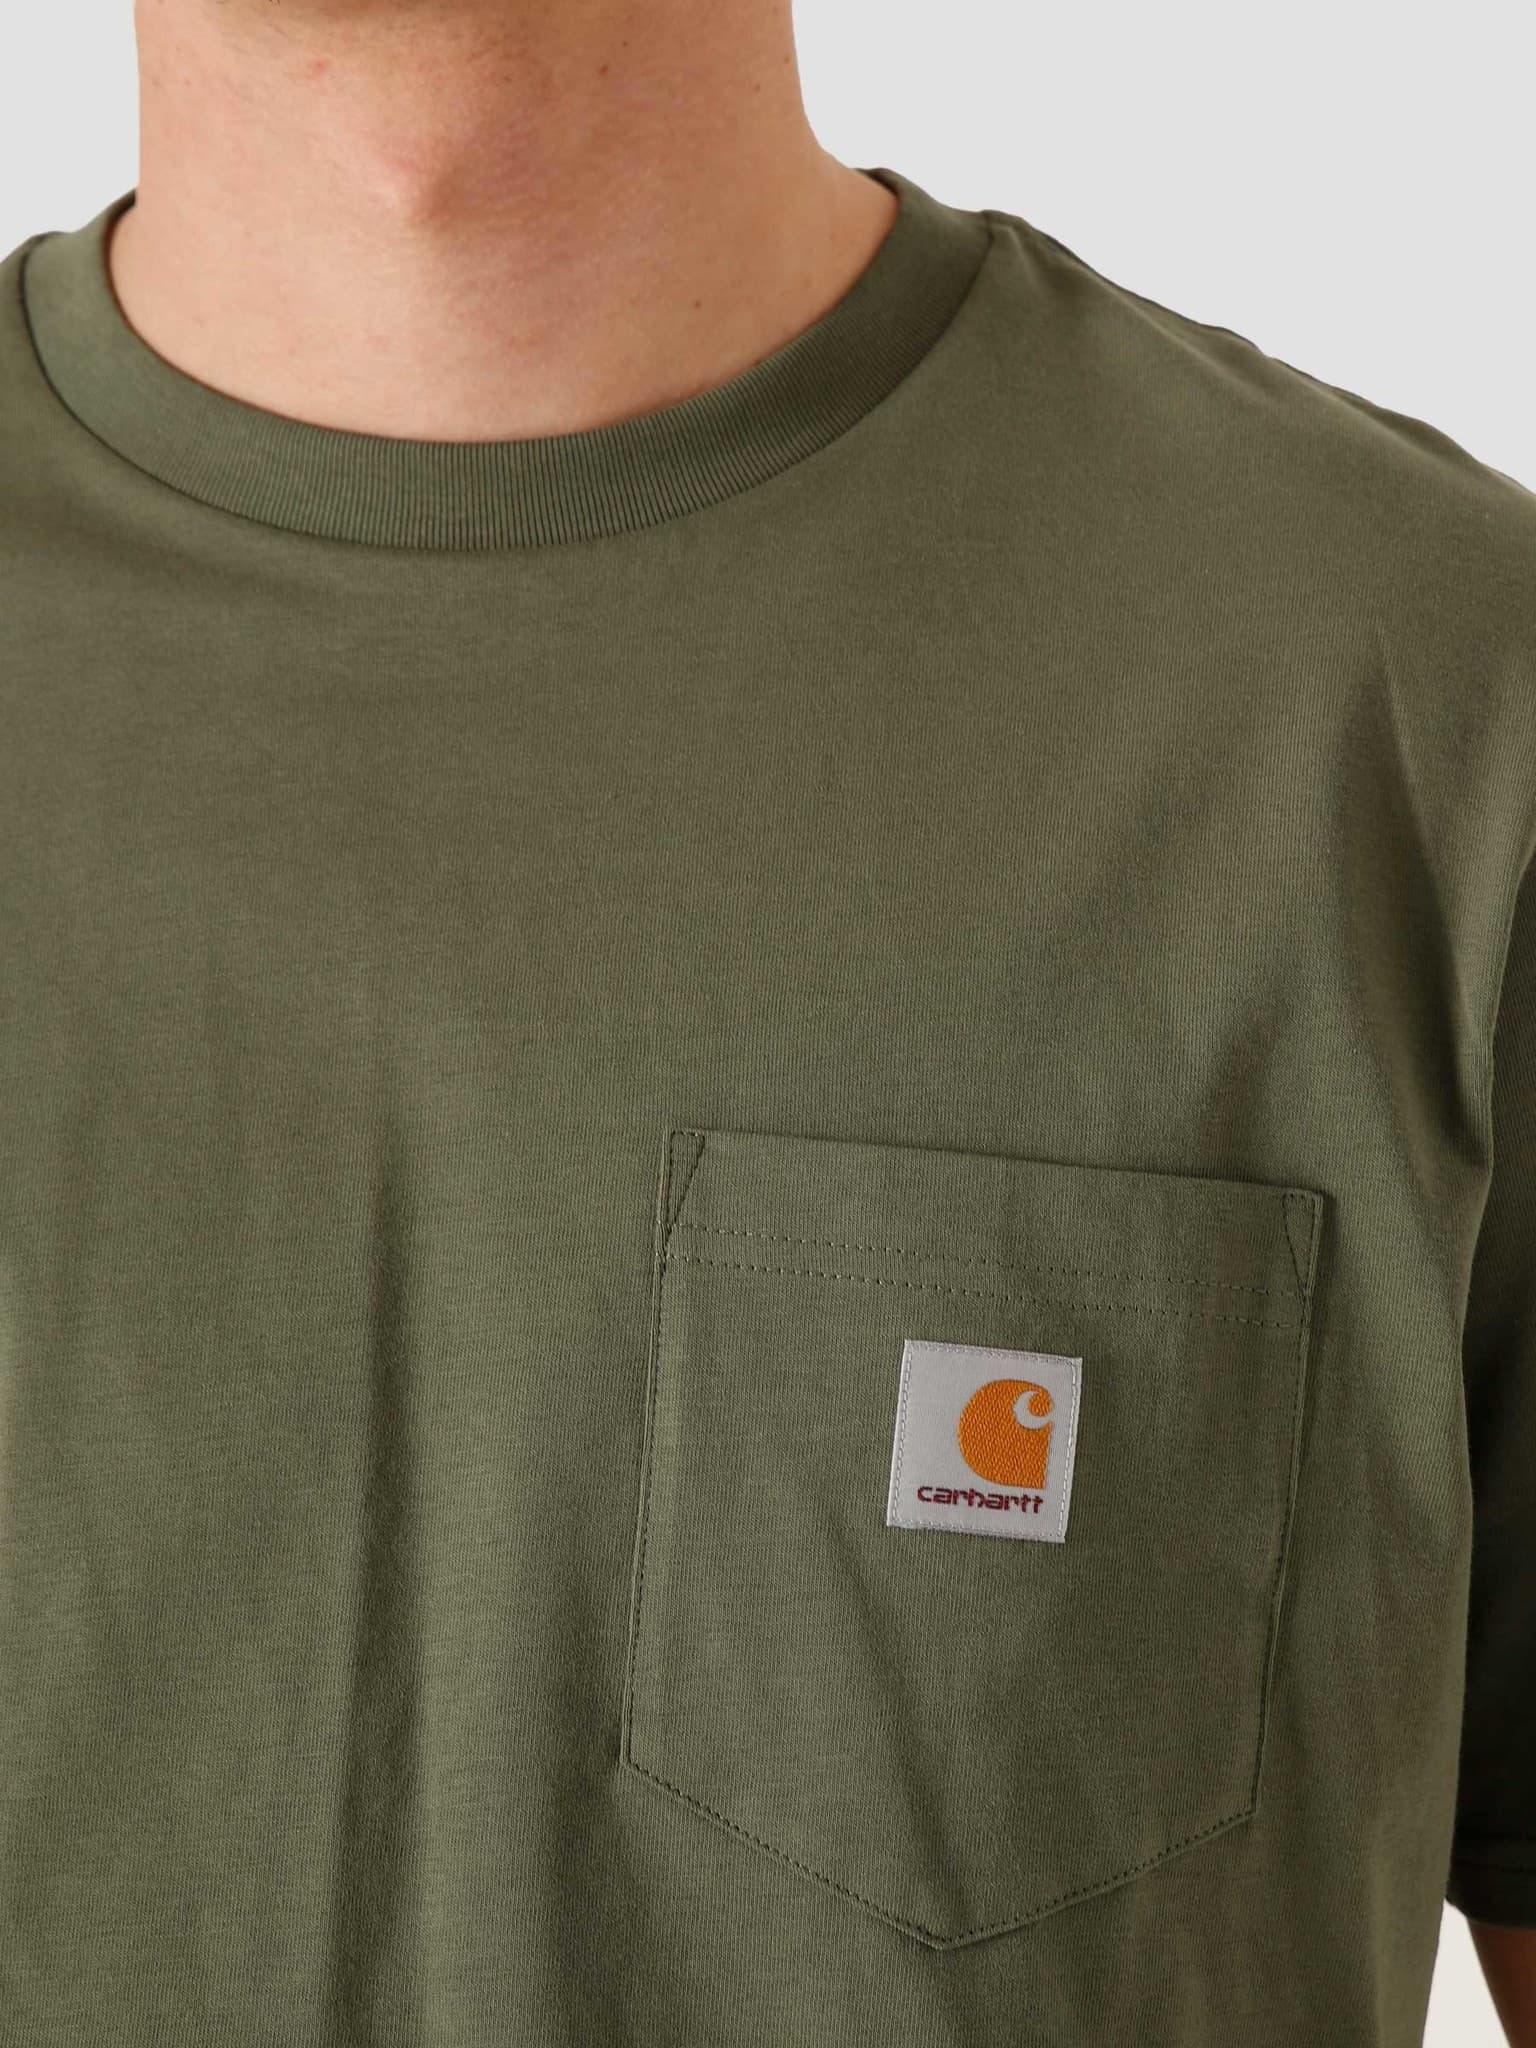 Pocket T-Shirt Dollar Green I022091-66700